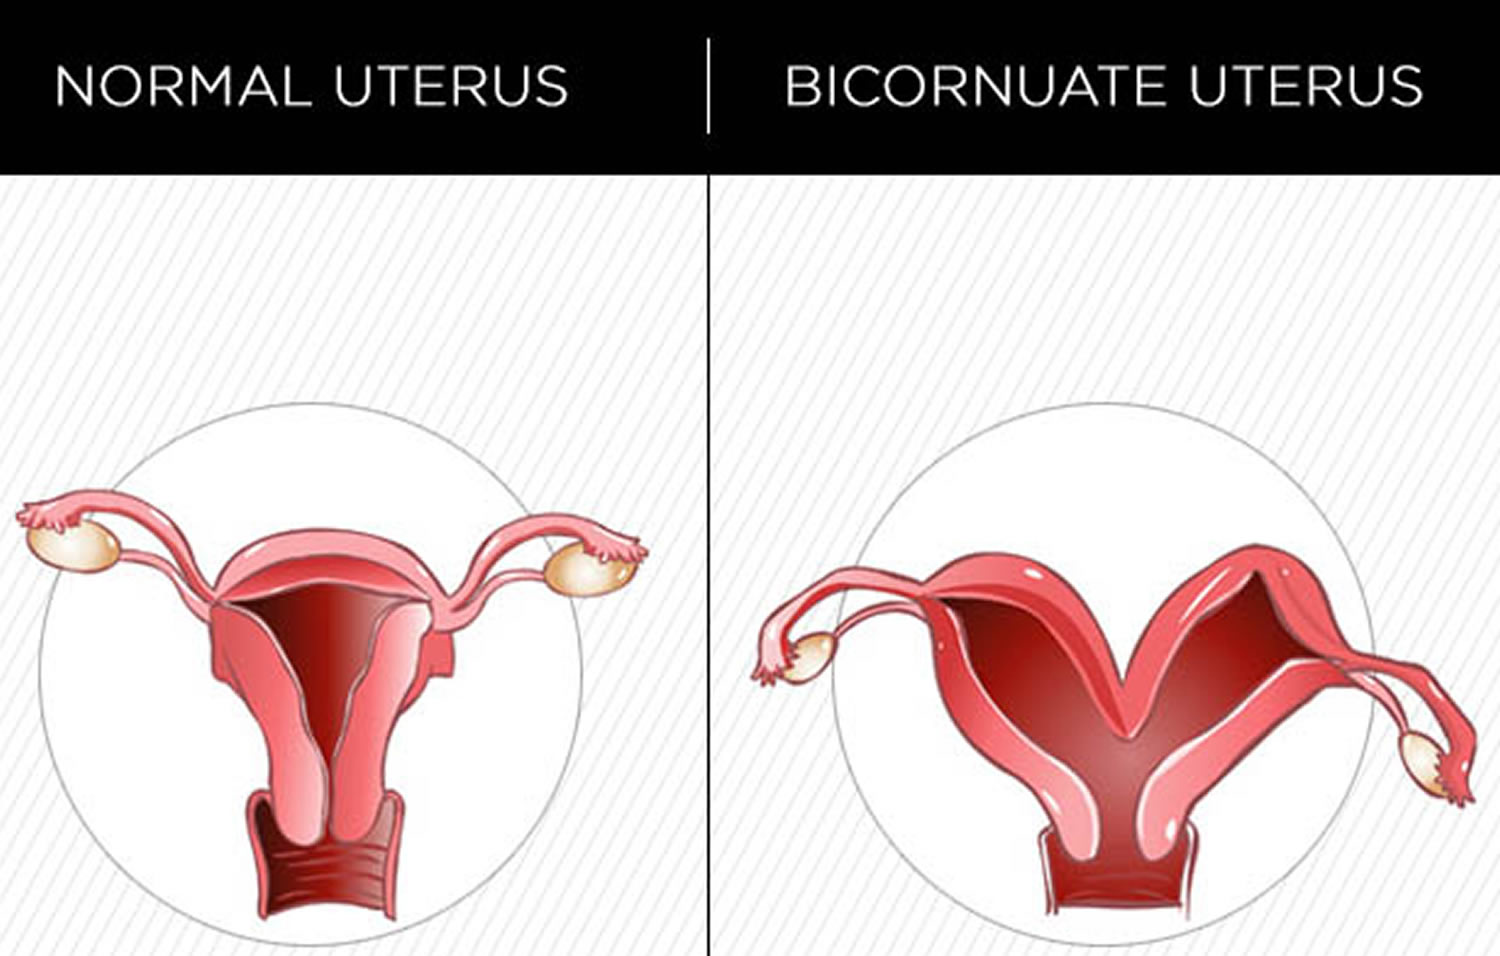 Single horn uterus